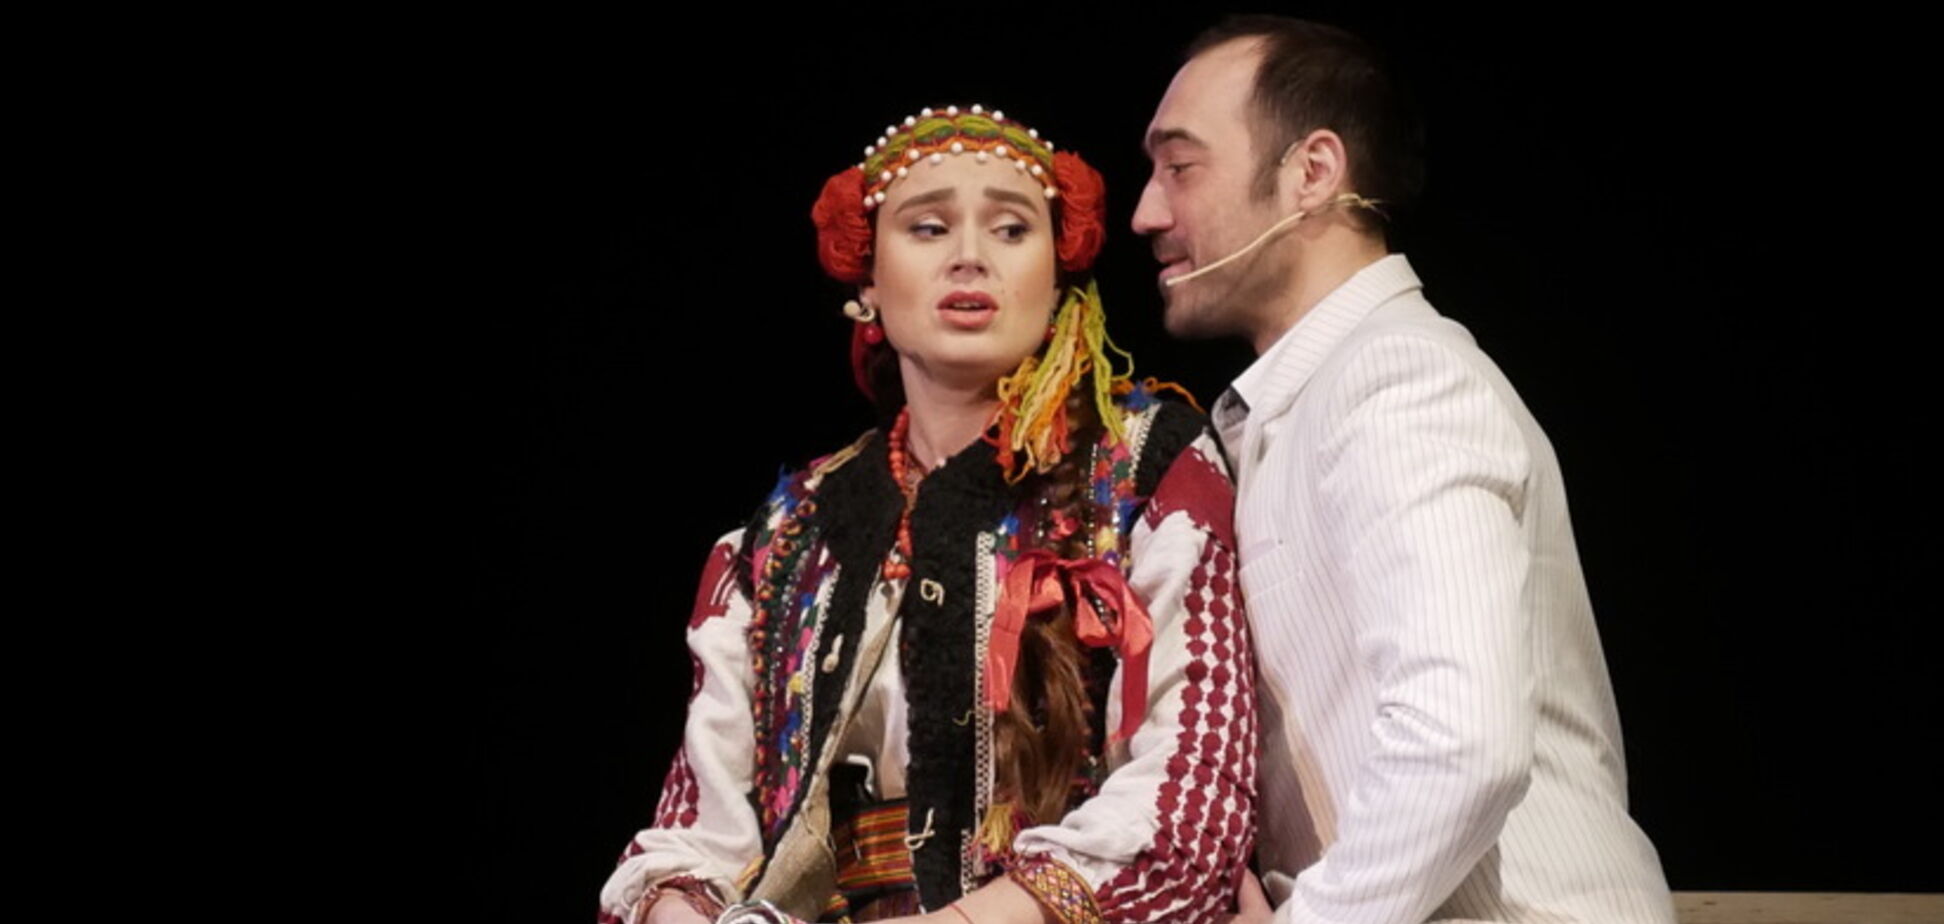 До Києва везуть мюзикл-сенсацію: гуцульські шуби, світлове шоу, оркестр і 30 артистів